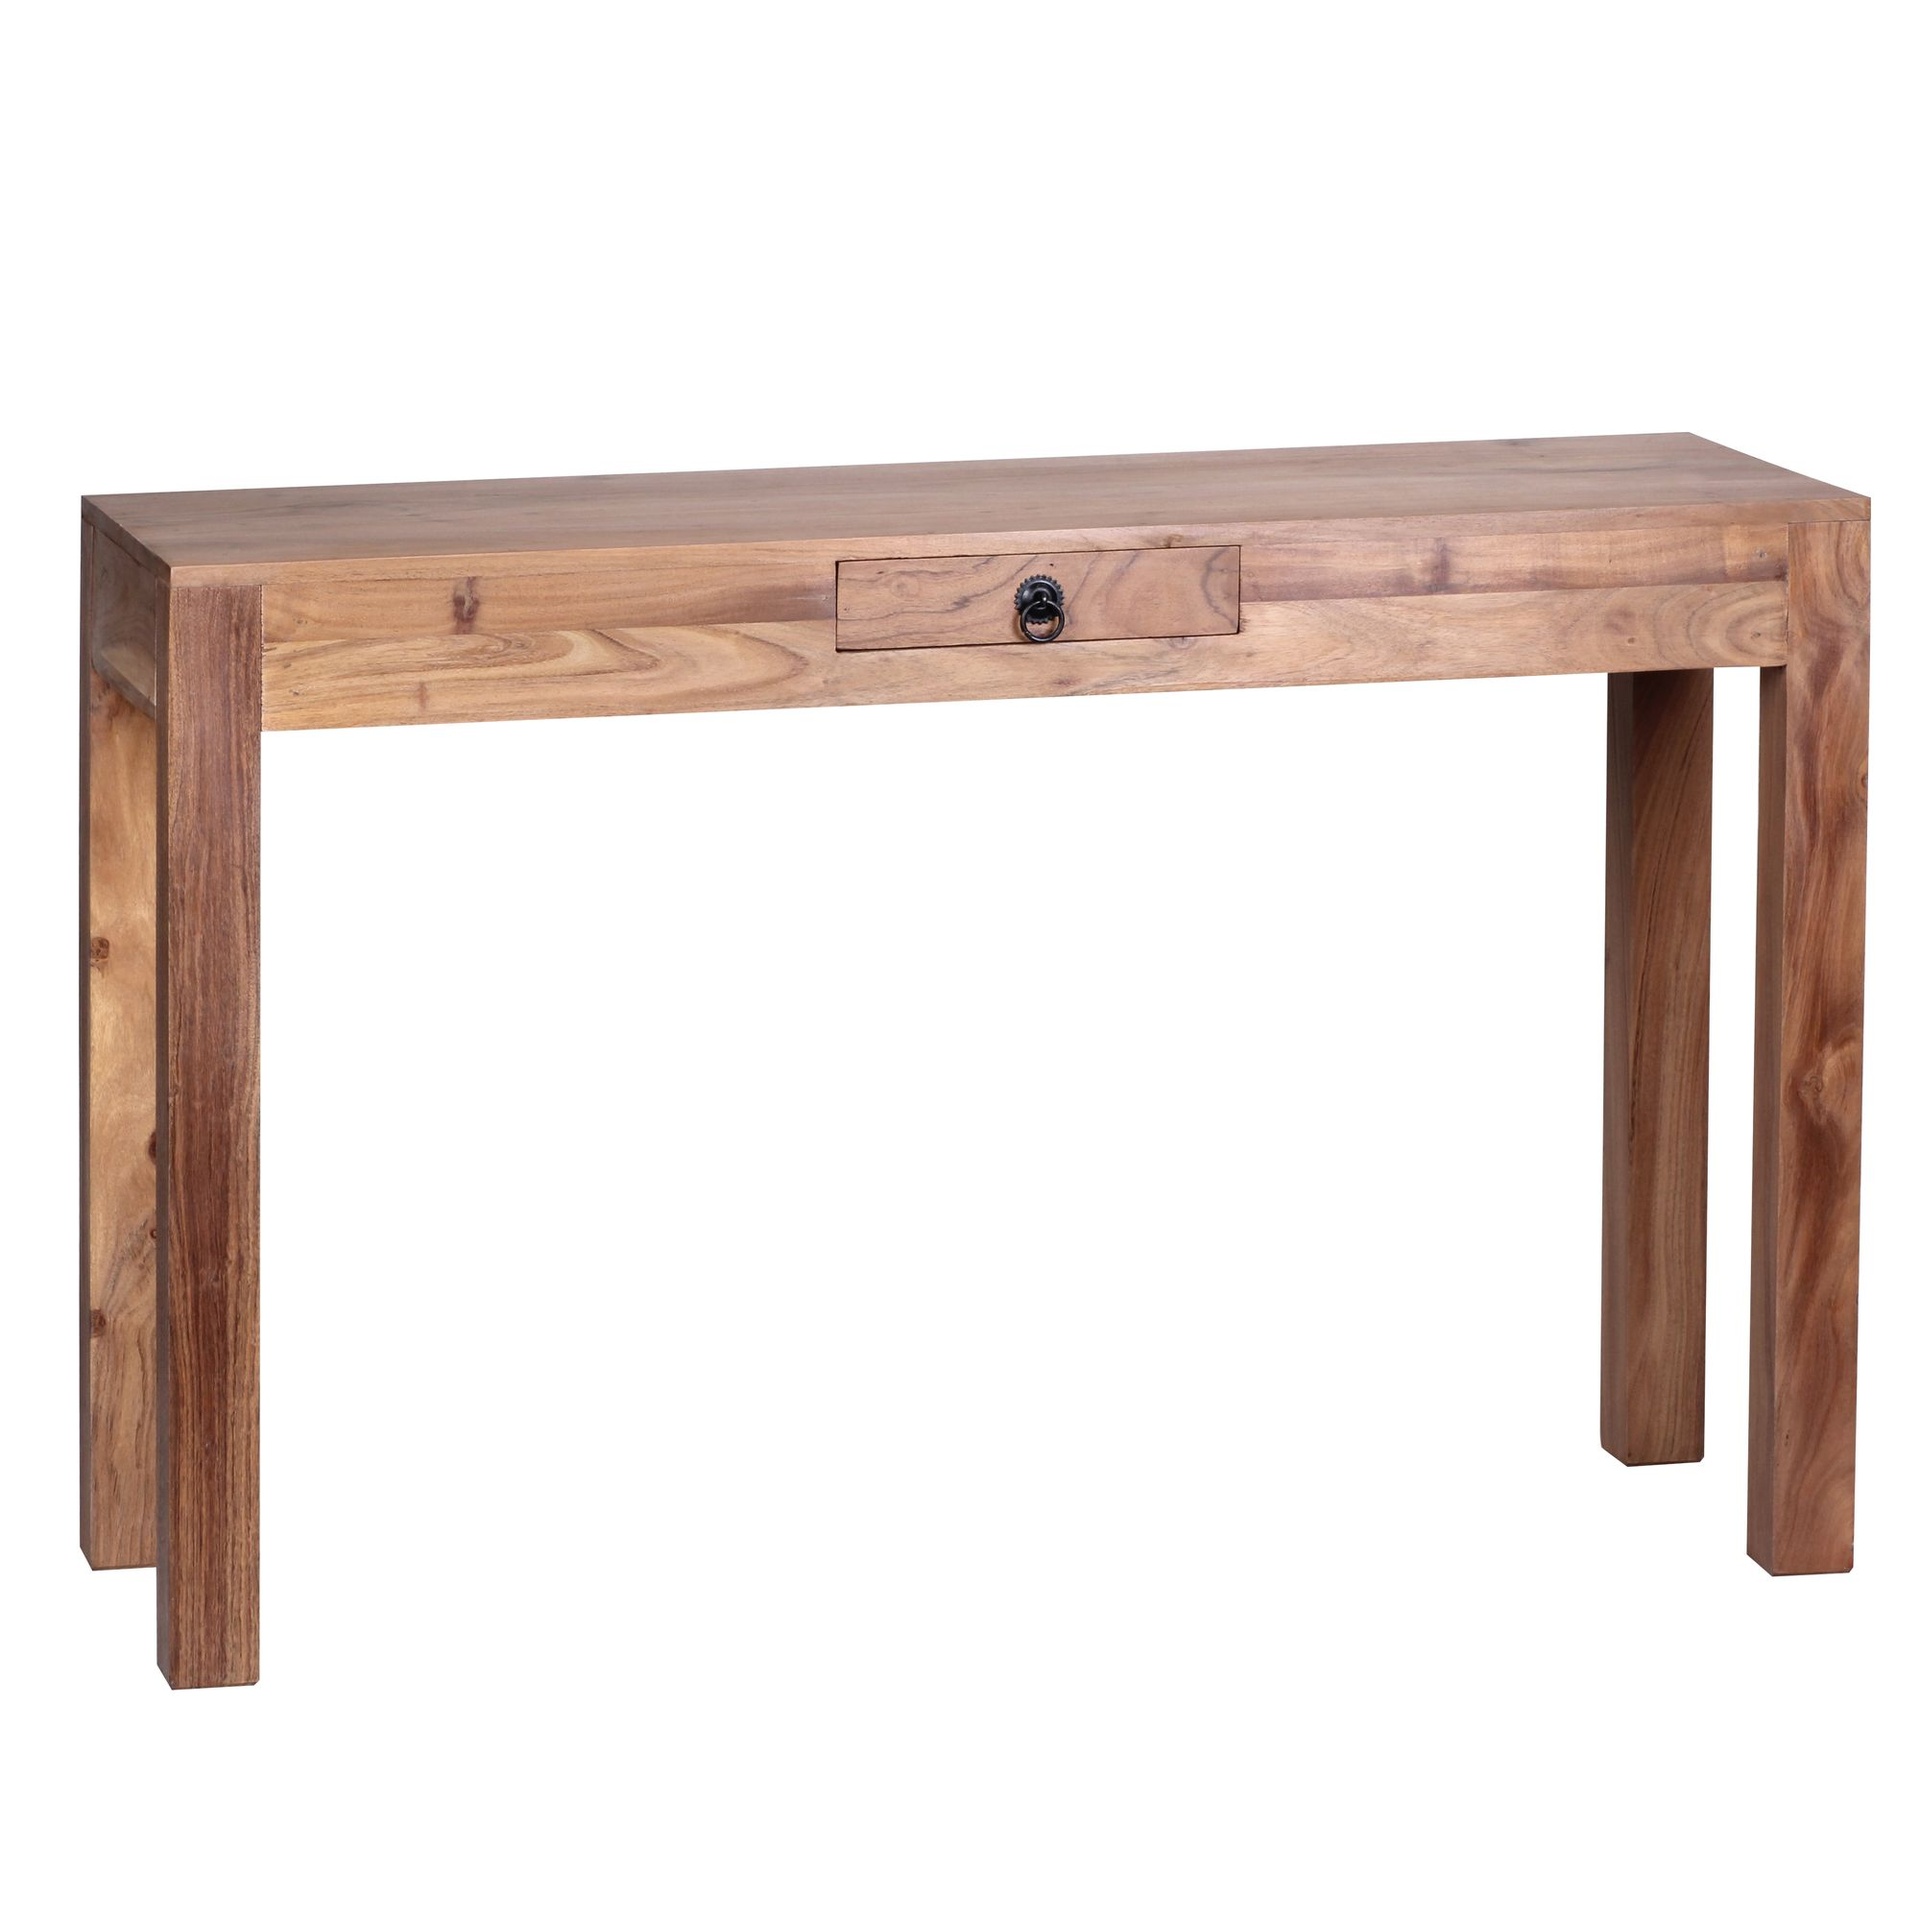 [A09623] Table console MUMBAI console en bois d'acacia massif avec 1 tiroir 120 x 40 cm style maison de campagne